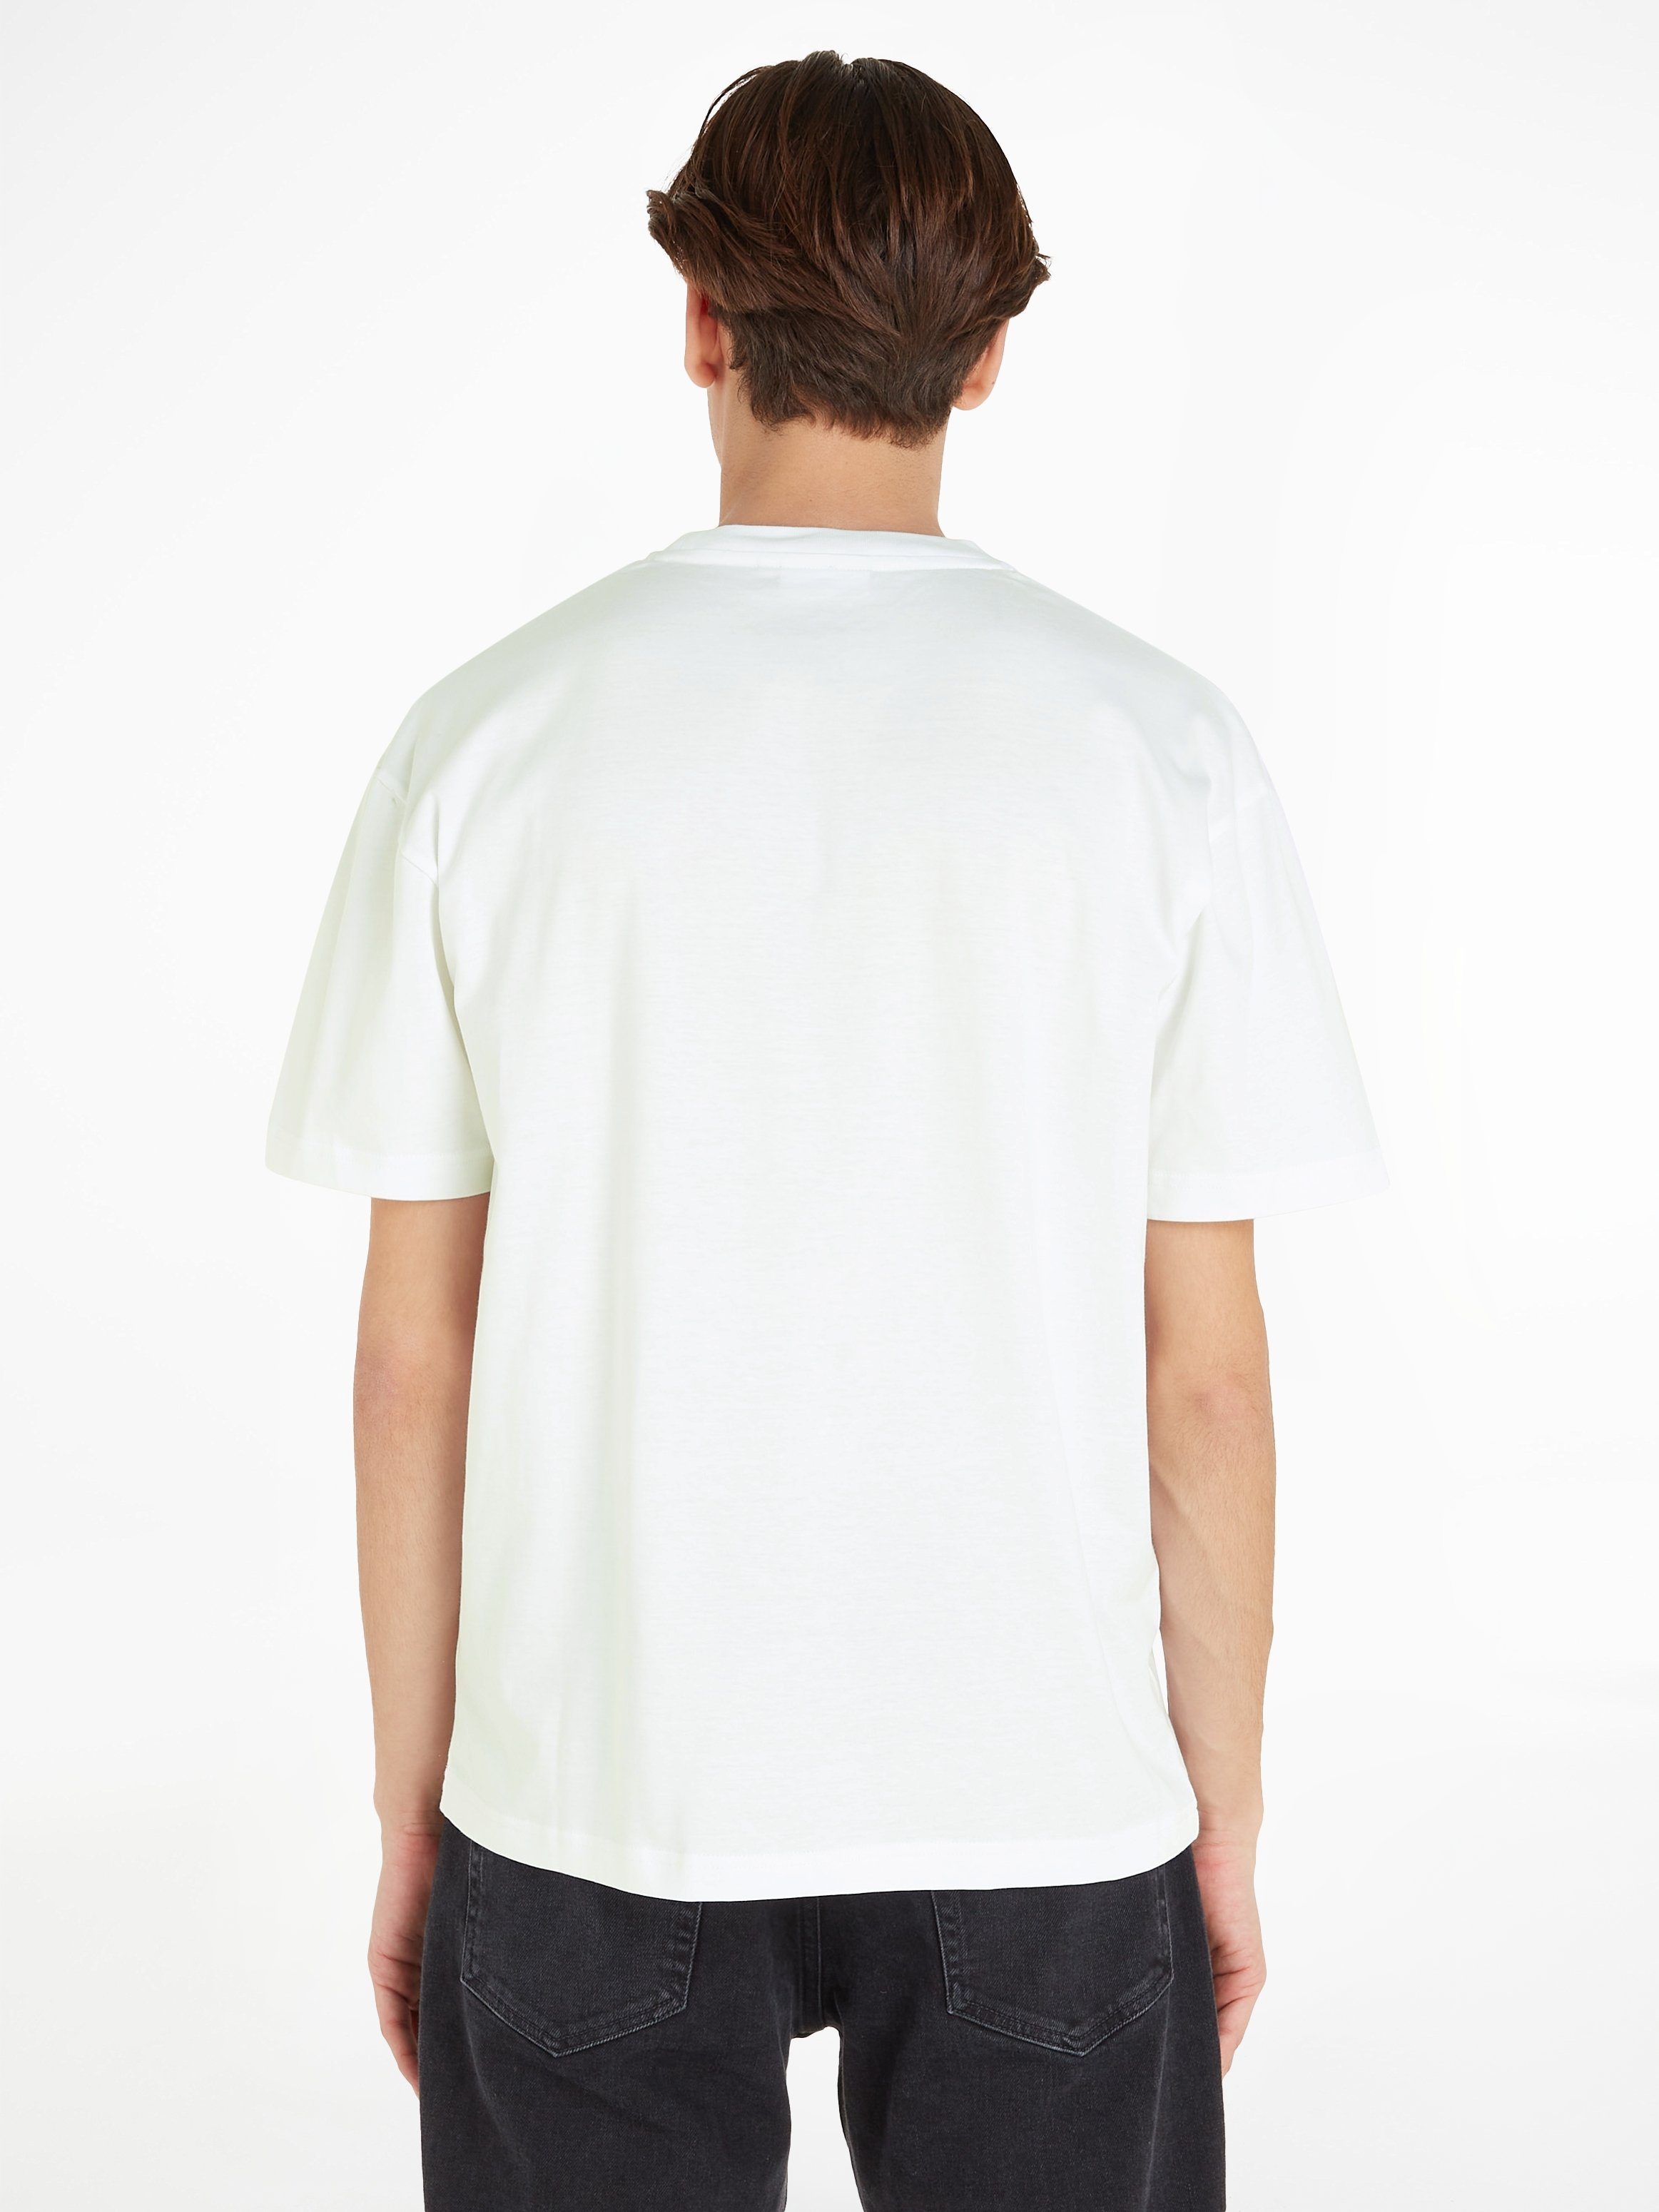 HERO COMFORT Markenlabel mit aufgedrucktem T-Shirt White LOGO Klein Bright T-SHIRT Calvin